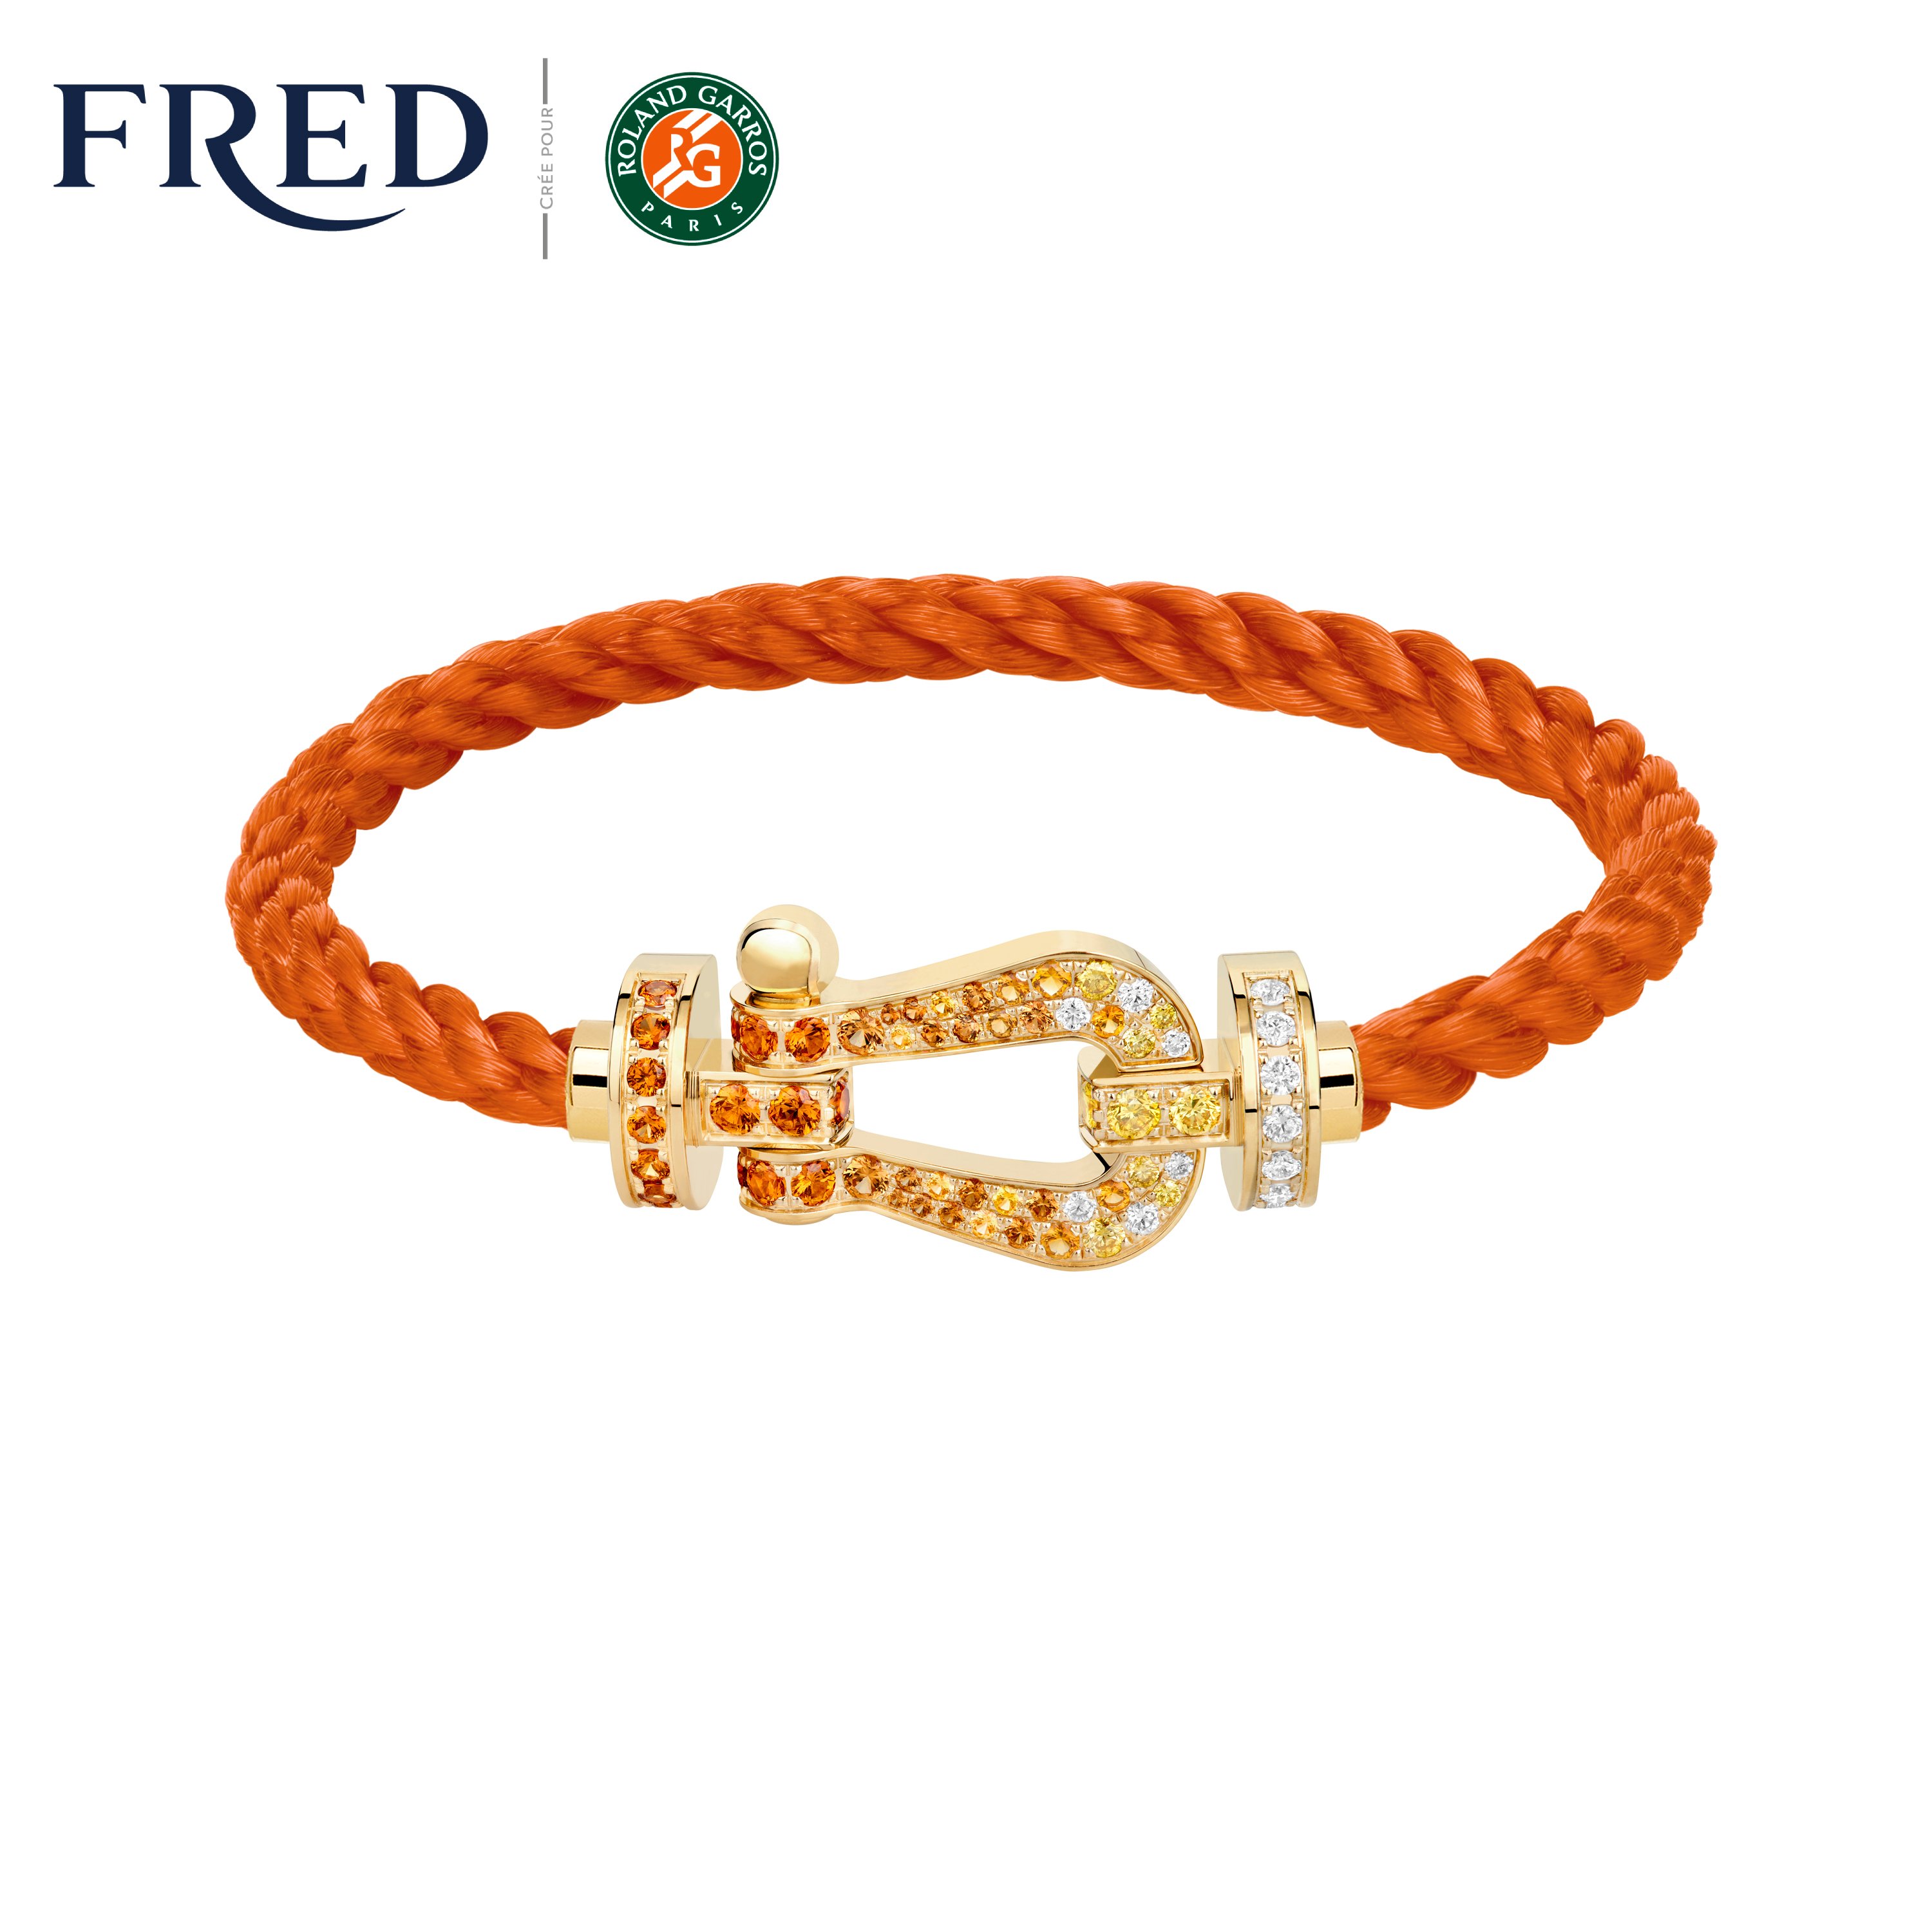 Fred Force 10 Rose Gold Bracelet at 1stDibs  fred bracelet, fred force 10  bracelet, bracelet fred homme prix